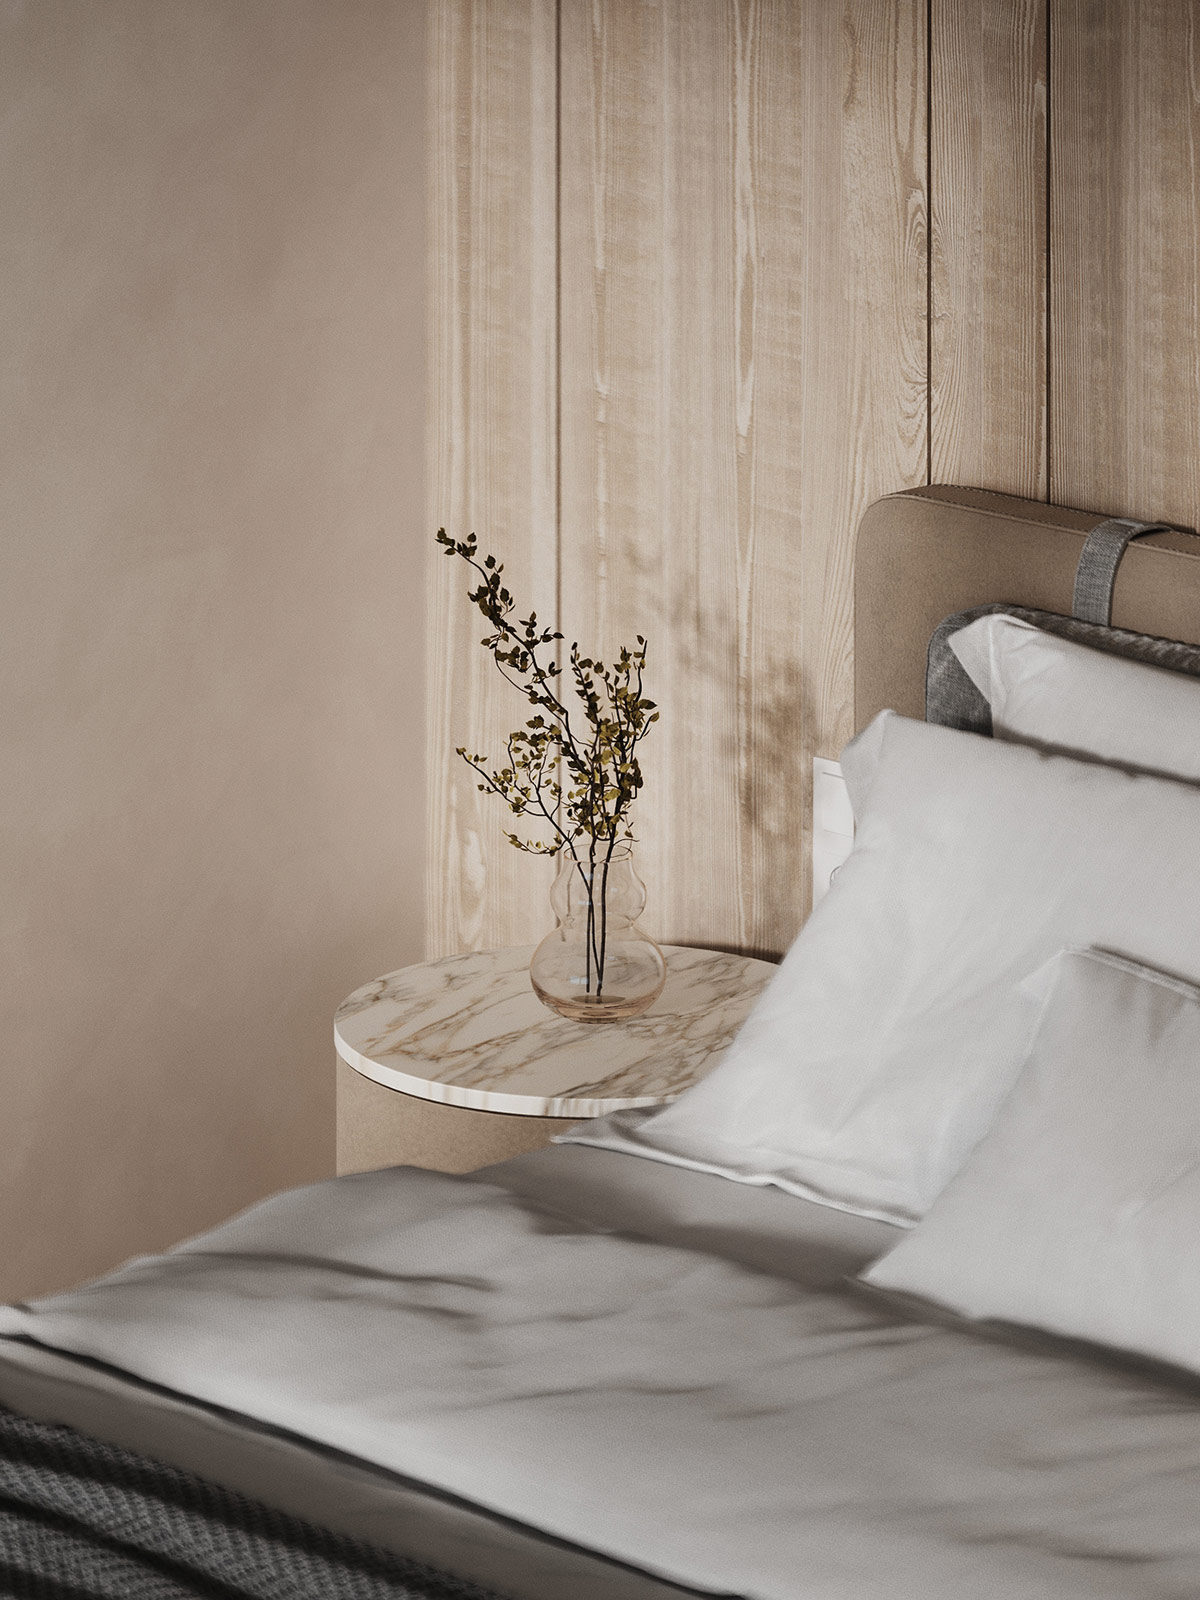 白色大理石和木质装饰营造温馨的现代家居空间